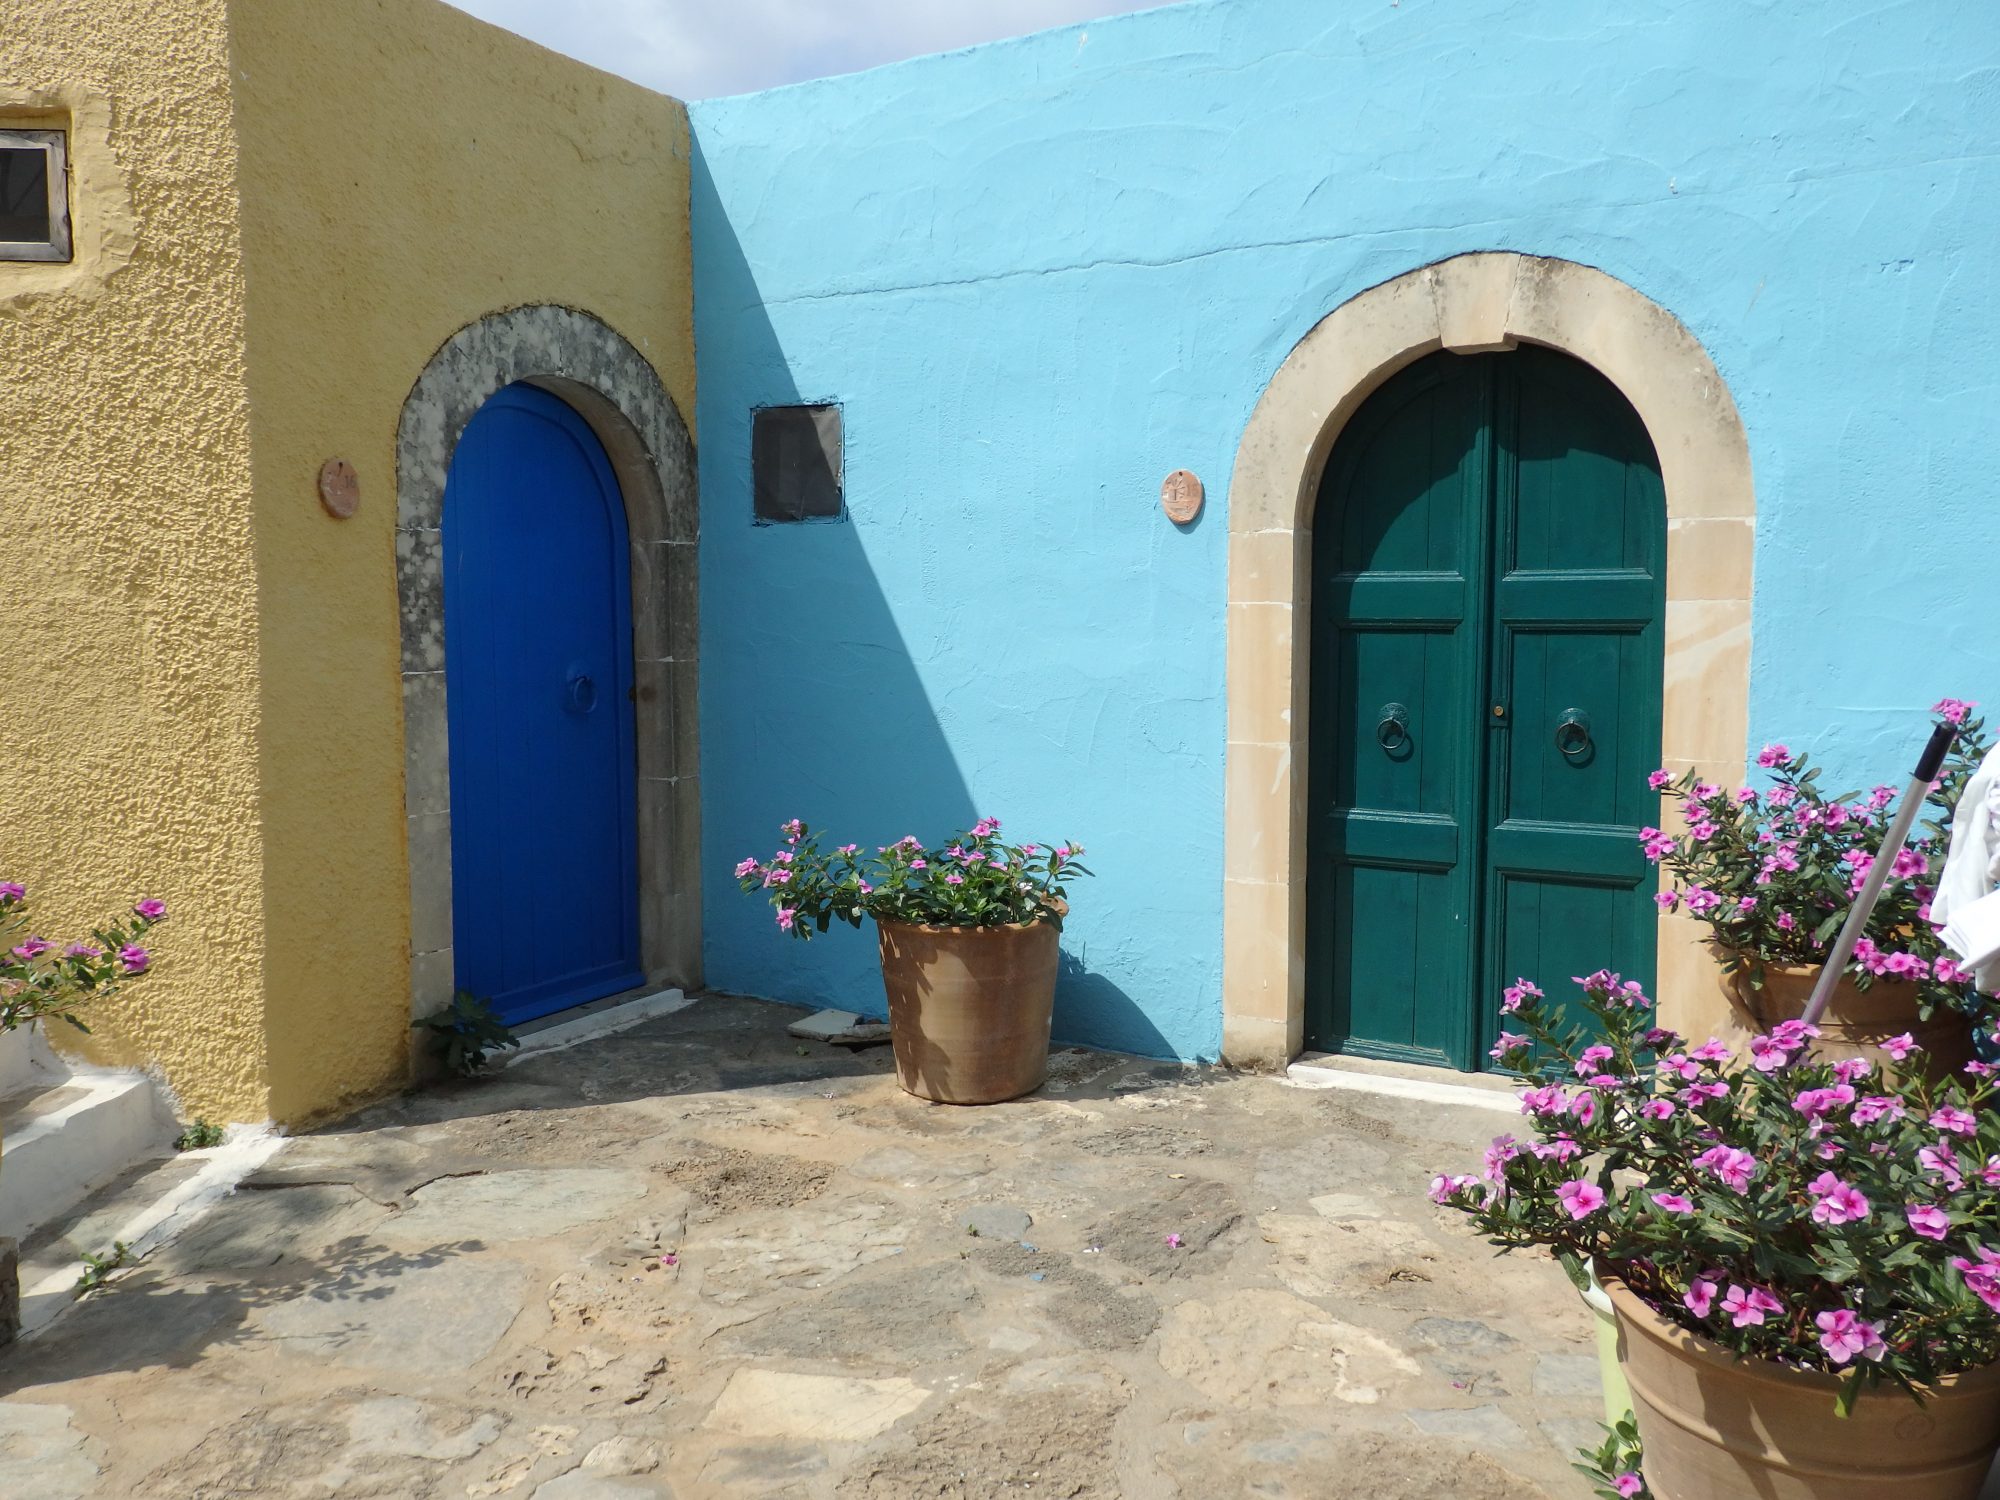 Doorways in Arolithos Traditional Cretan Village near Heraklion, Crete